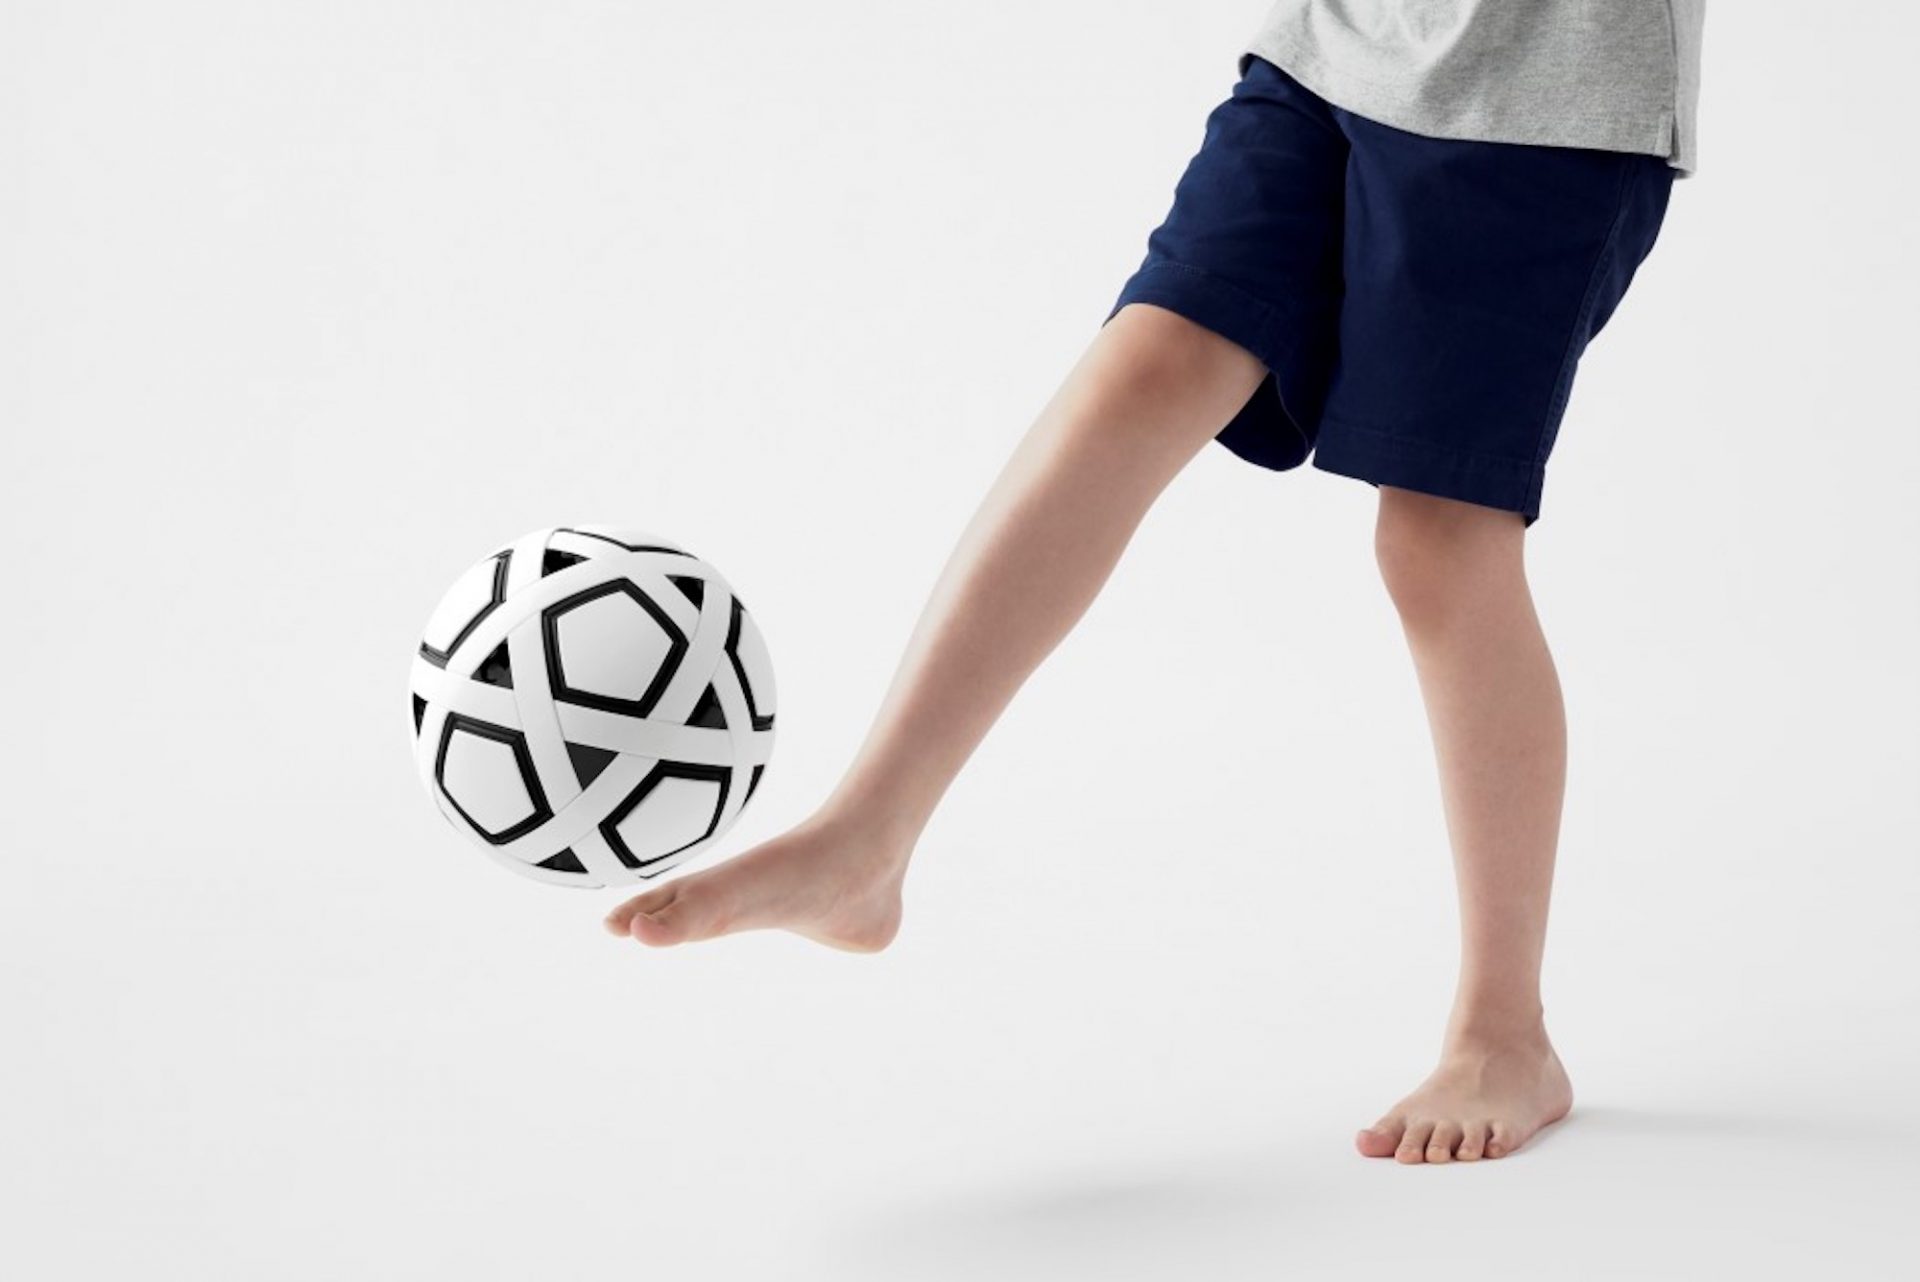 Un ballon de football sans air livré en kit et que vous devez monter vous-même